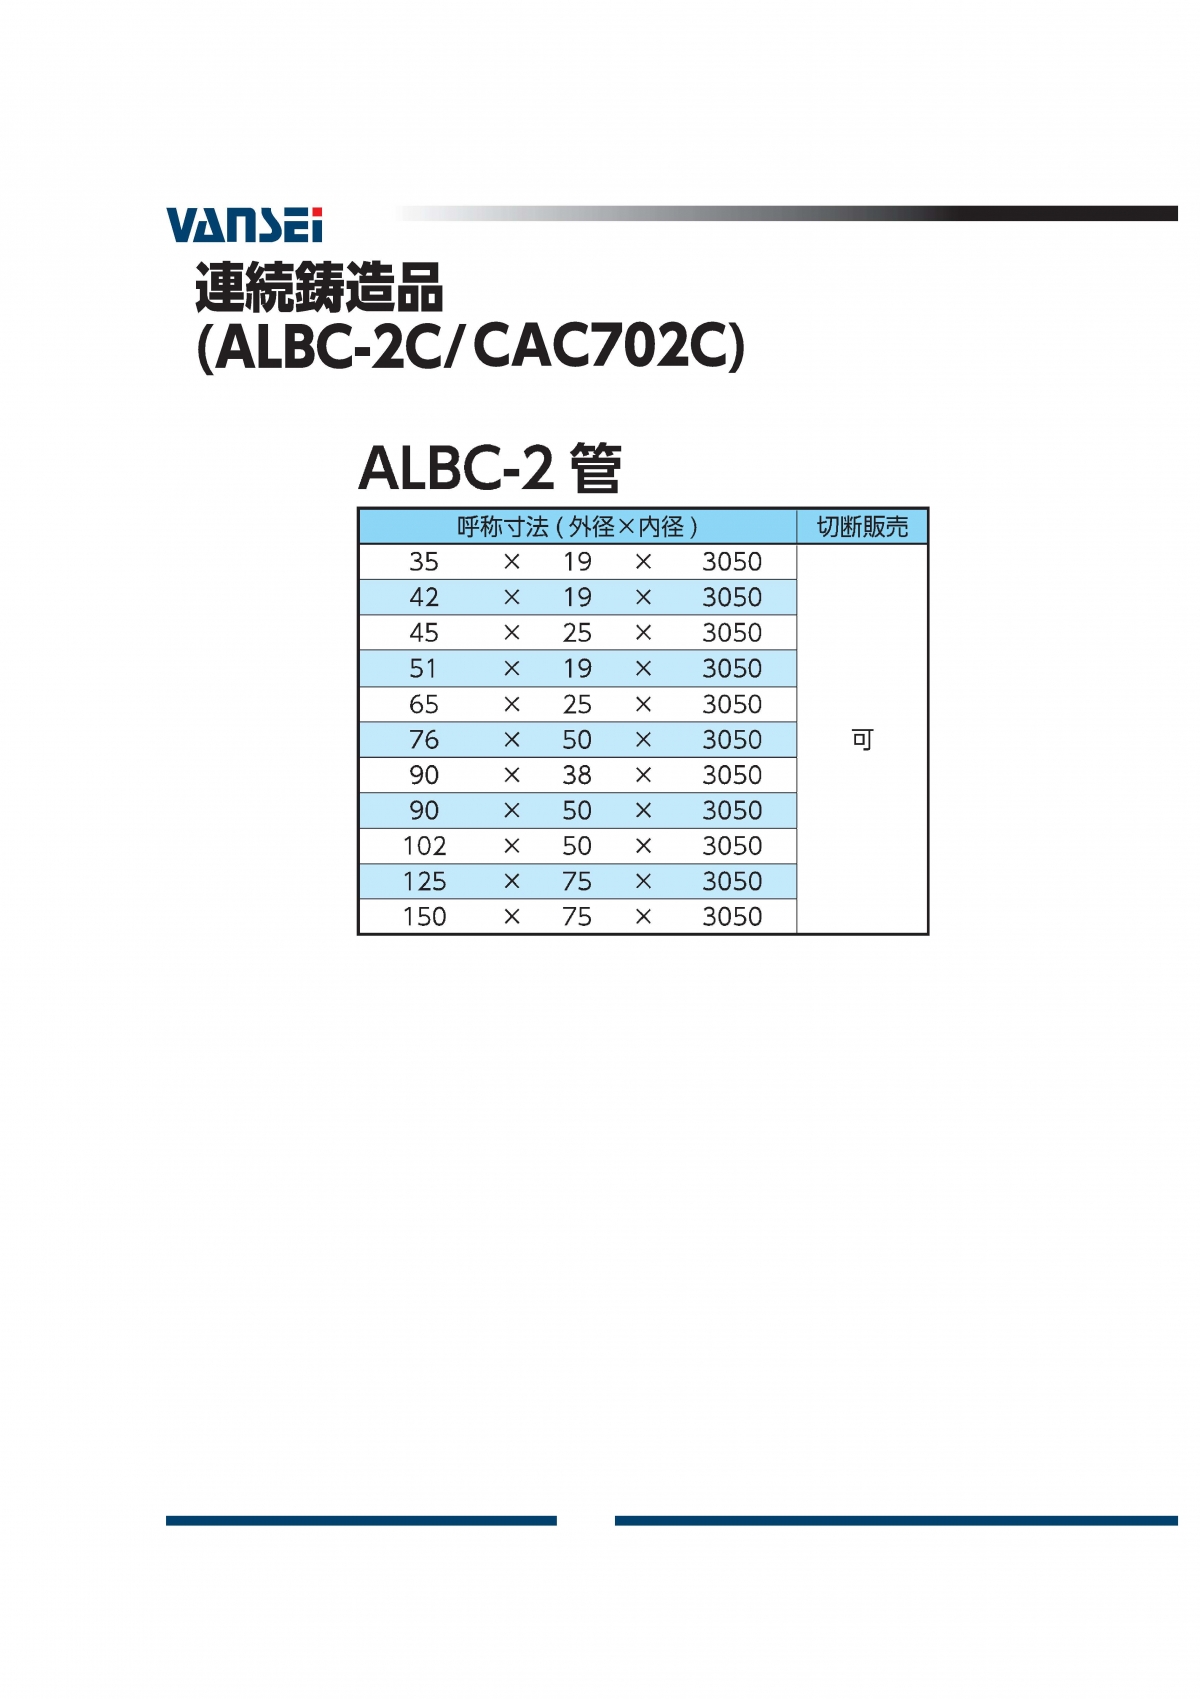 ALBC-2パイプ(CAC702C)